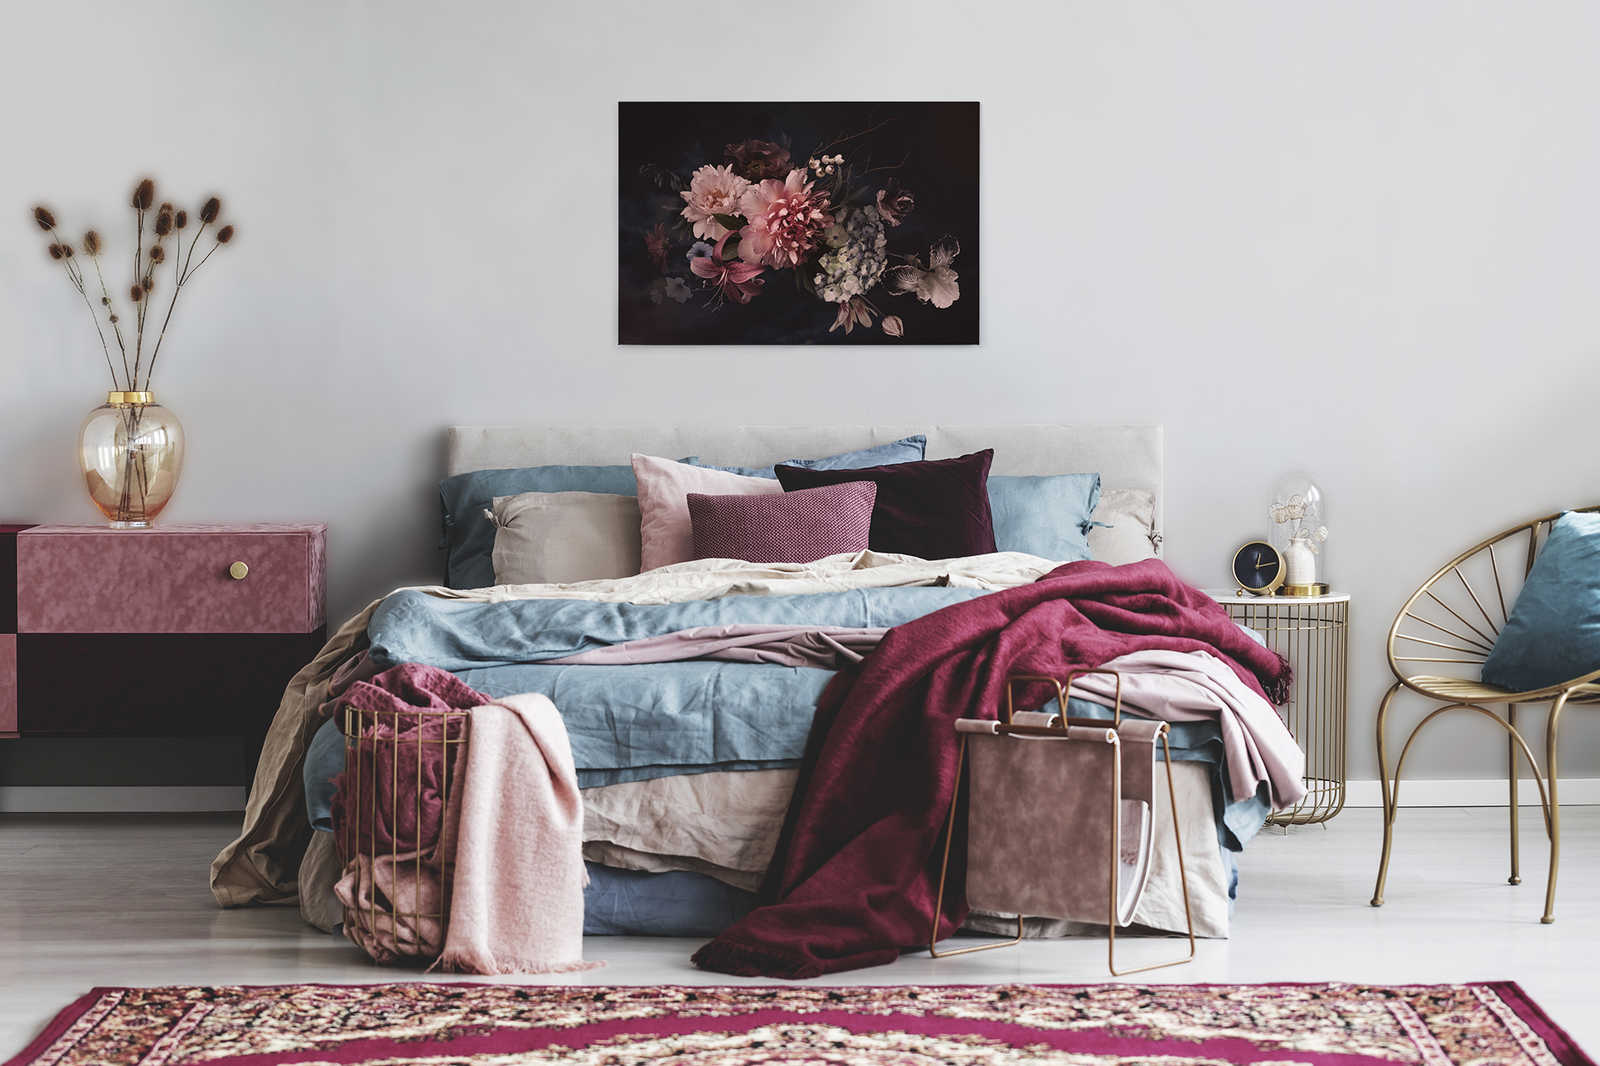             Leinwand mit Botanical-Style Blumenstrauß | rosa, schwarz – 0,90 m x 0,60 m
        